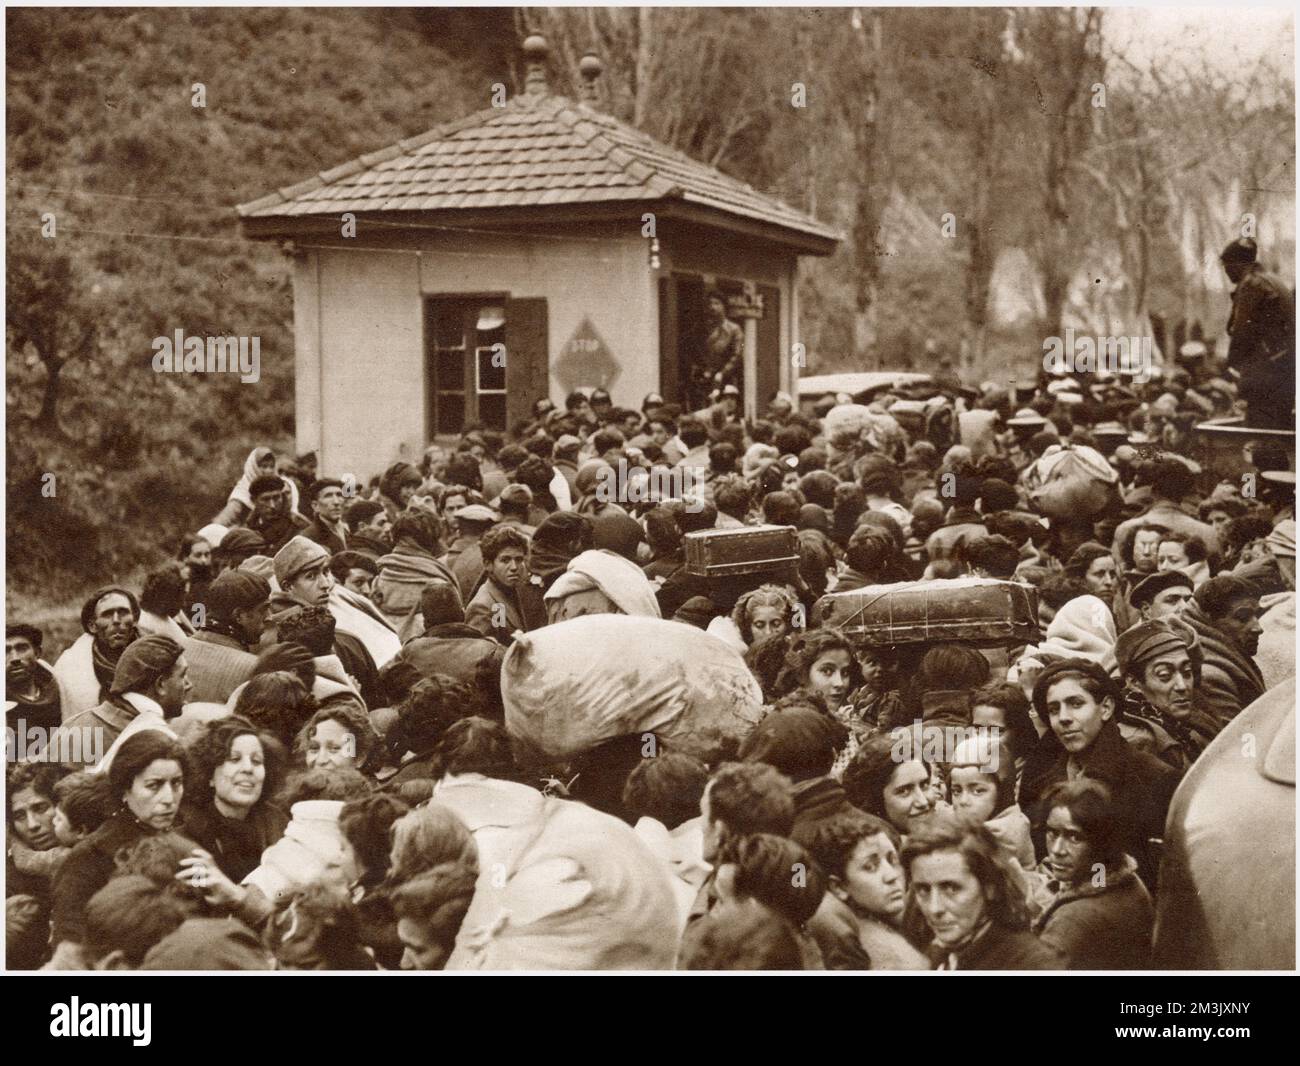 Einige der republikanischen Flüchtlinge, die nach dem Fall von Barcelona aus Spanien nach Frankreich flohen. In den ersten beiden Tagen, in denen die französische Grenze 1939 geöffnet wurde, überquerten 35.000 Republikaner die Grenze, um Francos Nationalisten zu entkommen. Stockfoto